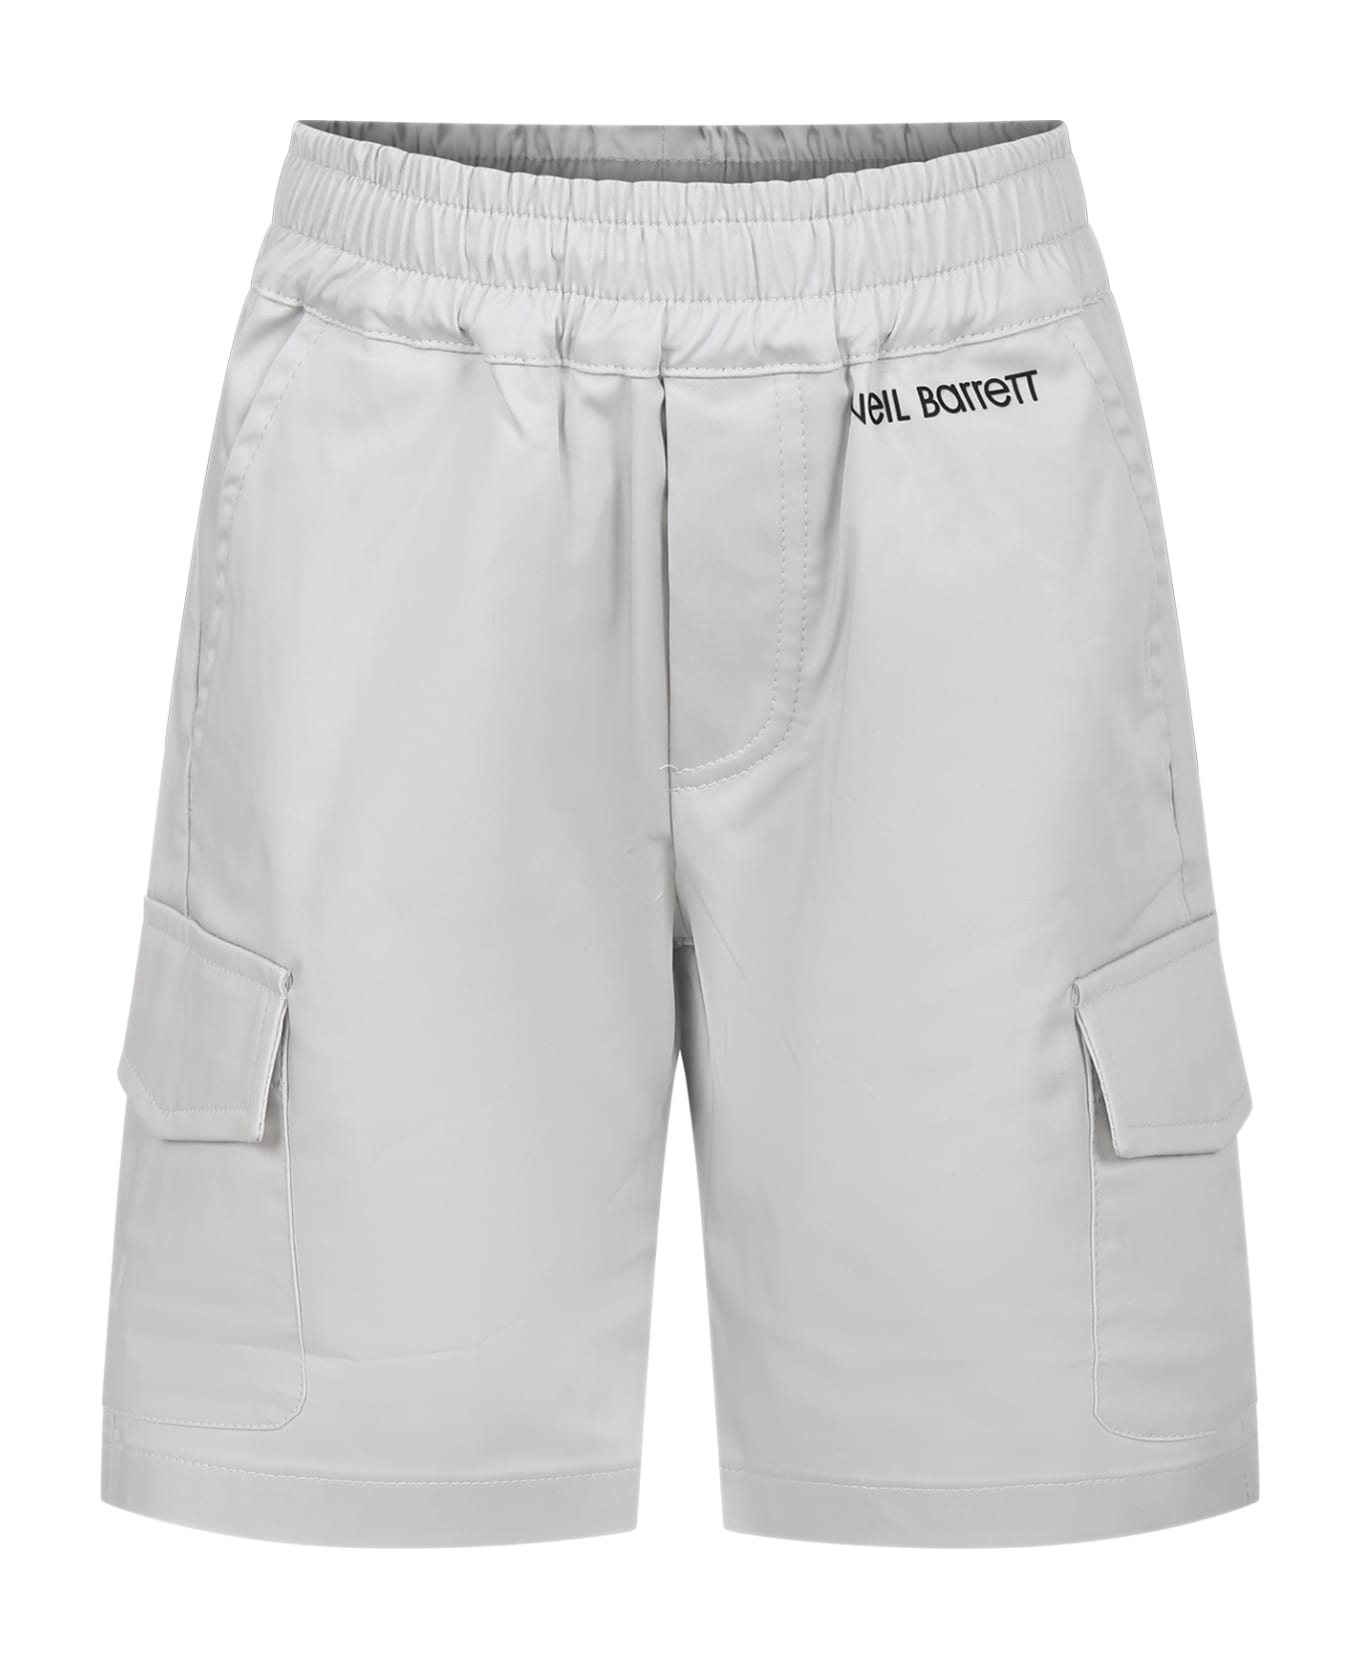 Neil Barrett Grey Shorts For Boy - Grey